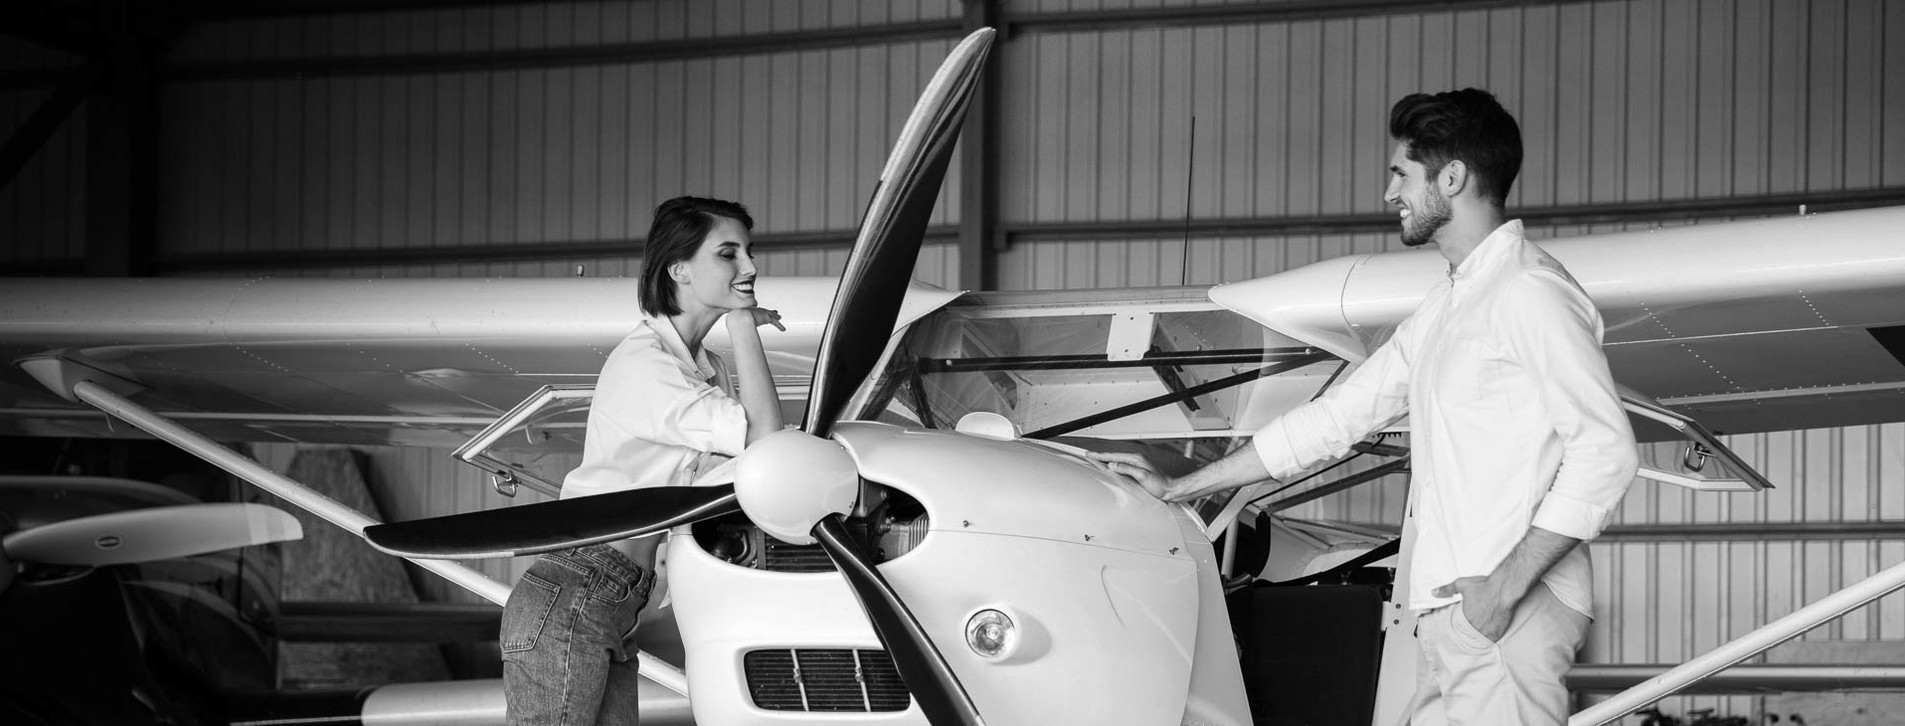 Фото 1 - Курс «Вищий пілотаж у стосунках» від Woman Insight